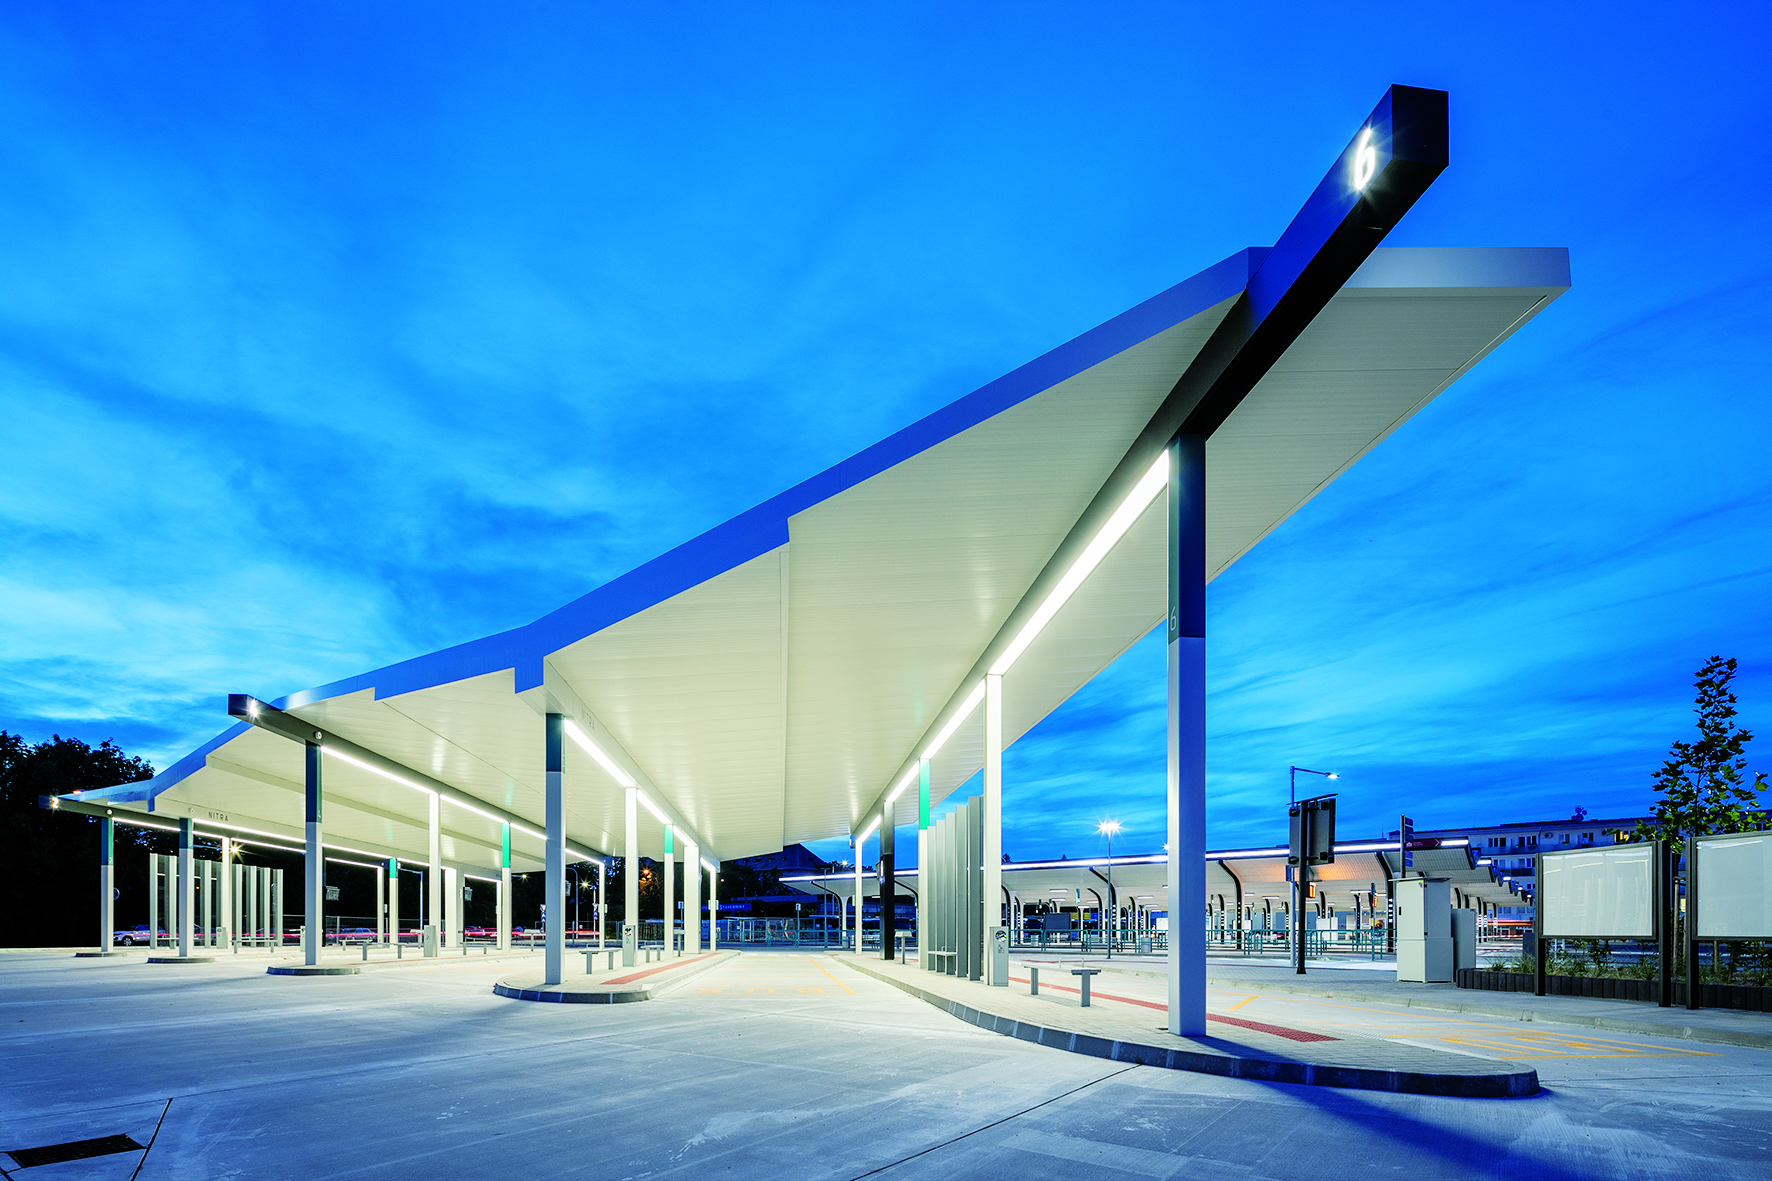 Všechna nástupiště dálkových linek na stanici v Nitře kryje elegantní souvislá střecha. V kreativním týmu Egoé studio zvolili tvarové řešení sestávající z jednotlivých pultových střech, které na sebe navazují.